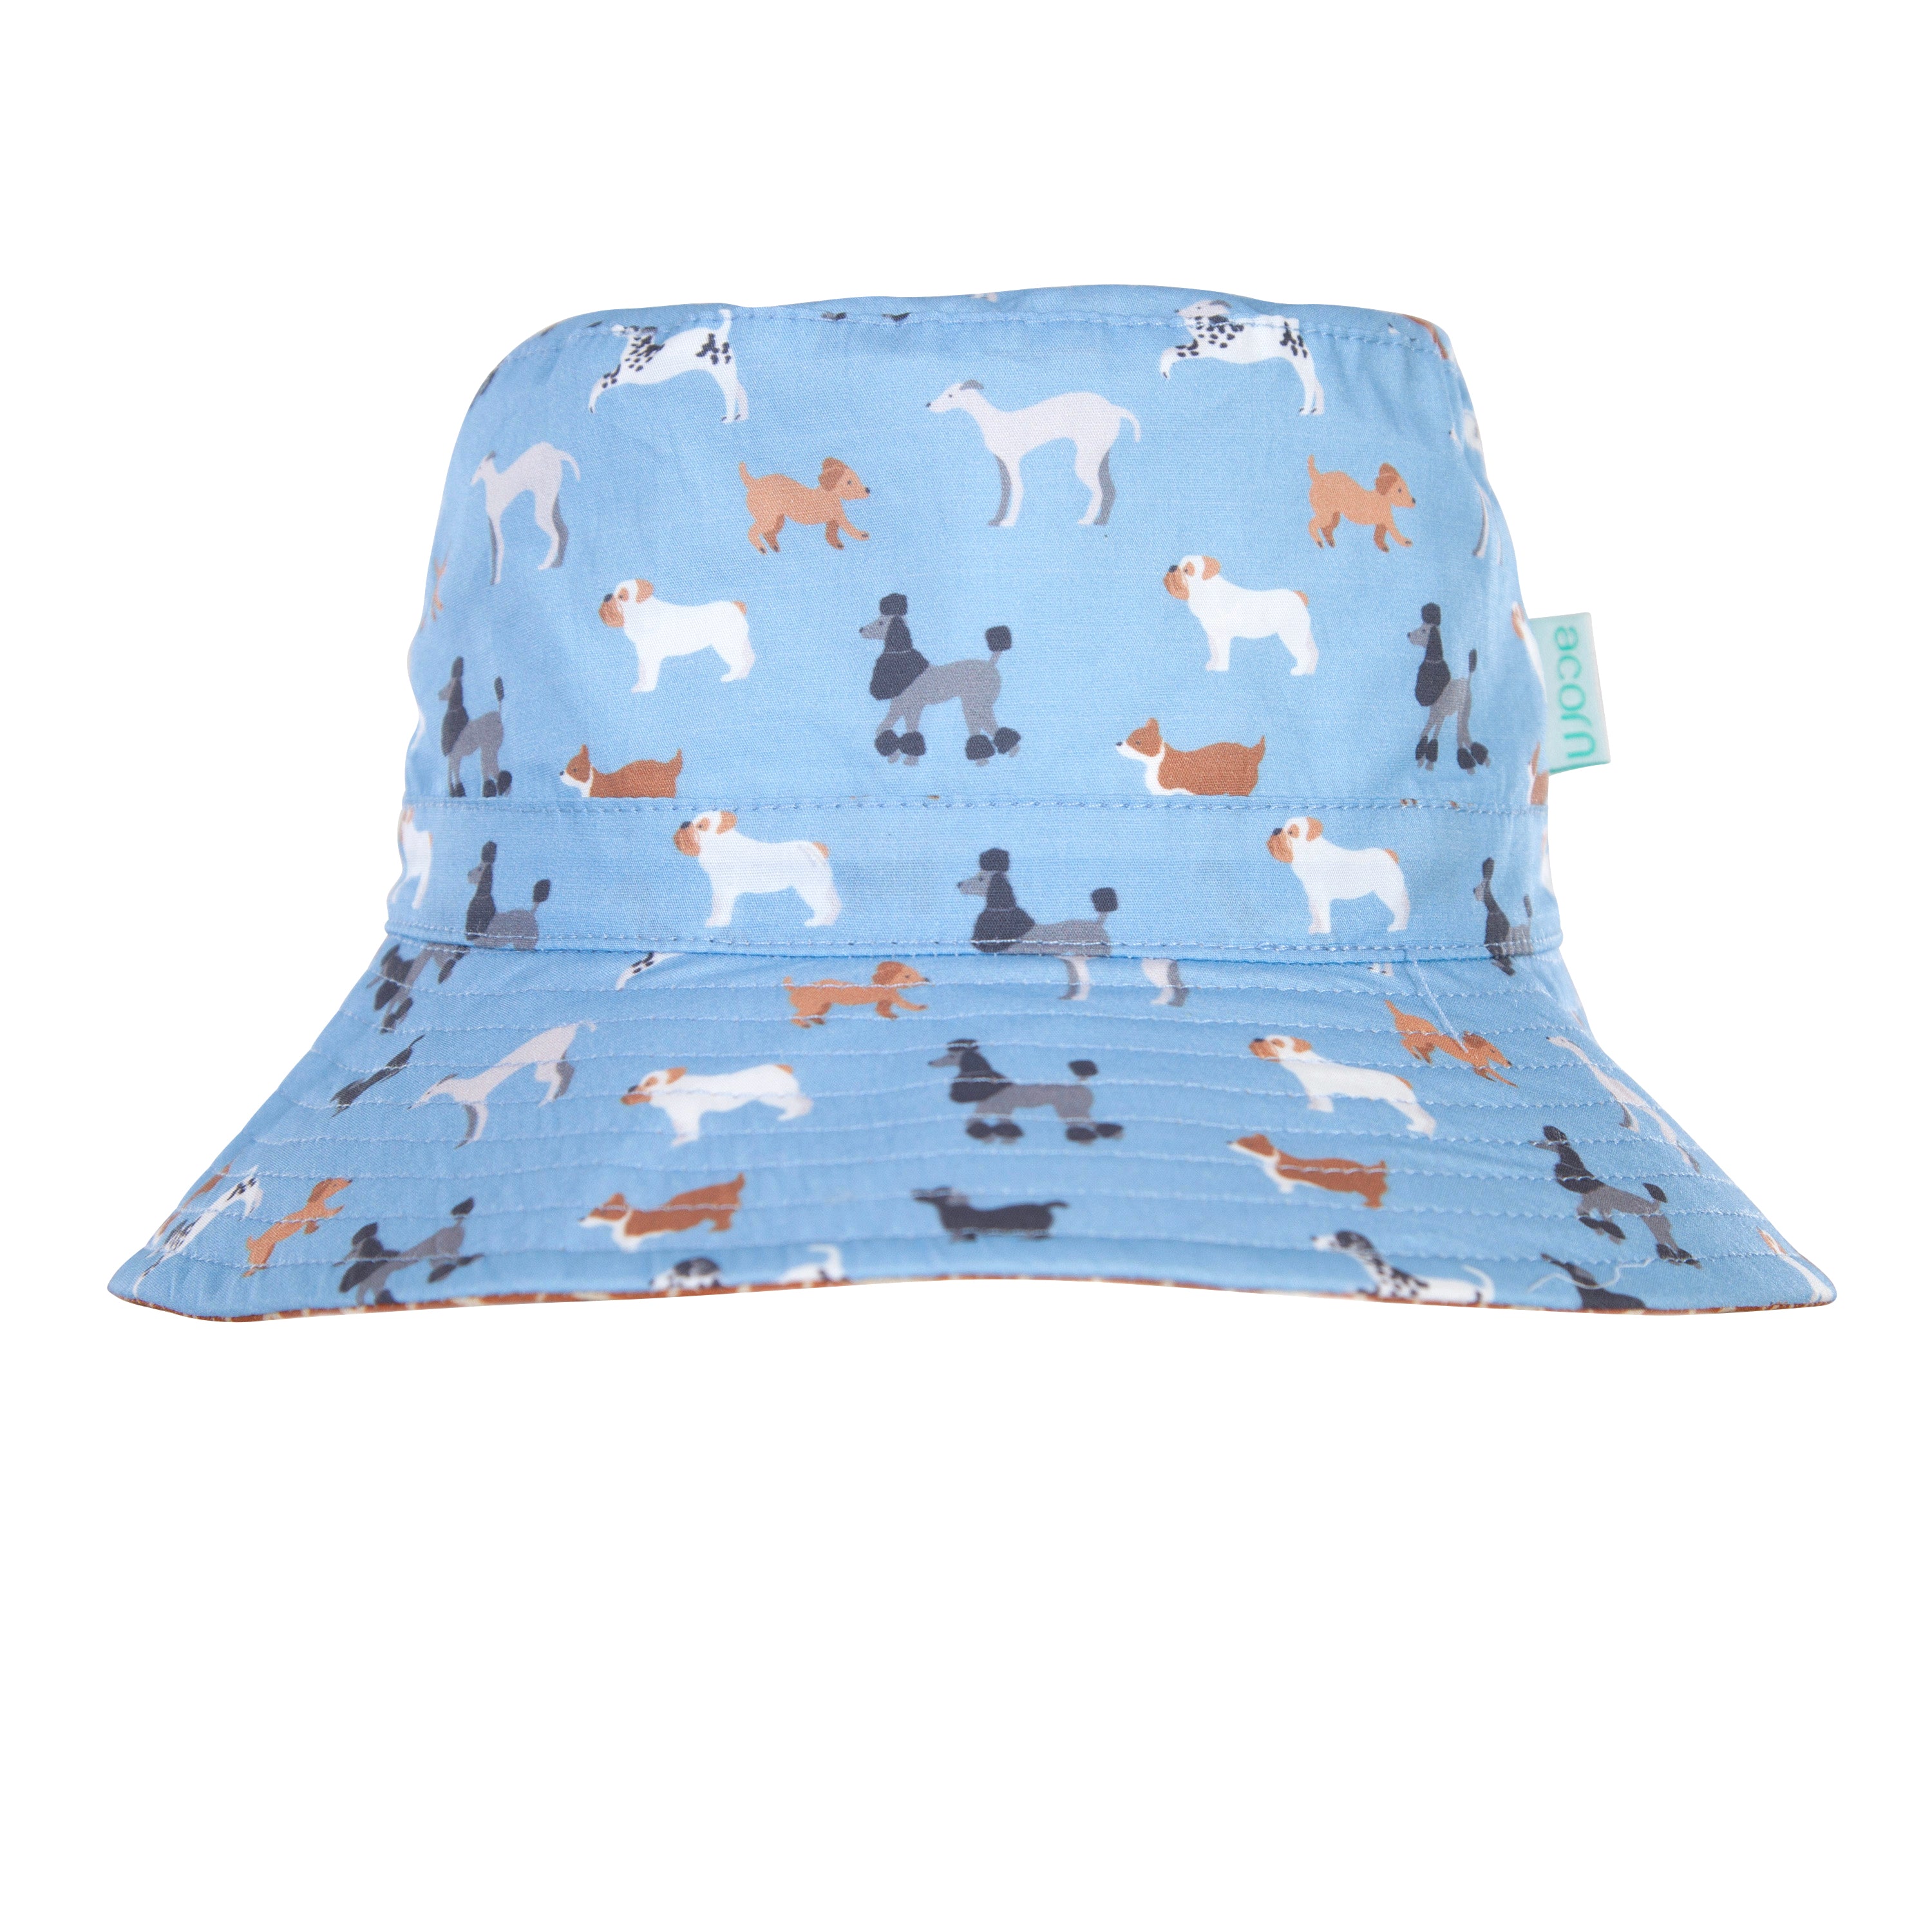 Acorn - Central Park Doggies Wide Brim Bucket Hat - Blue/Brown/White